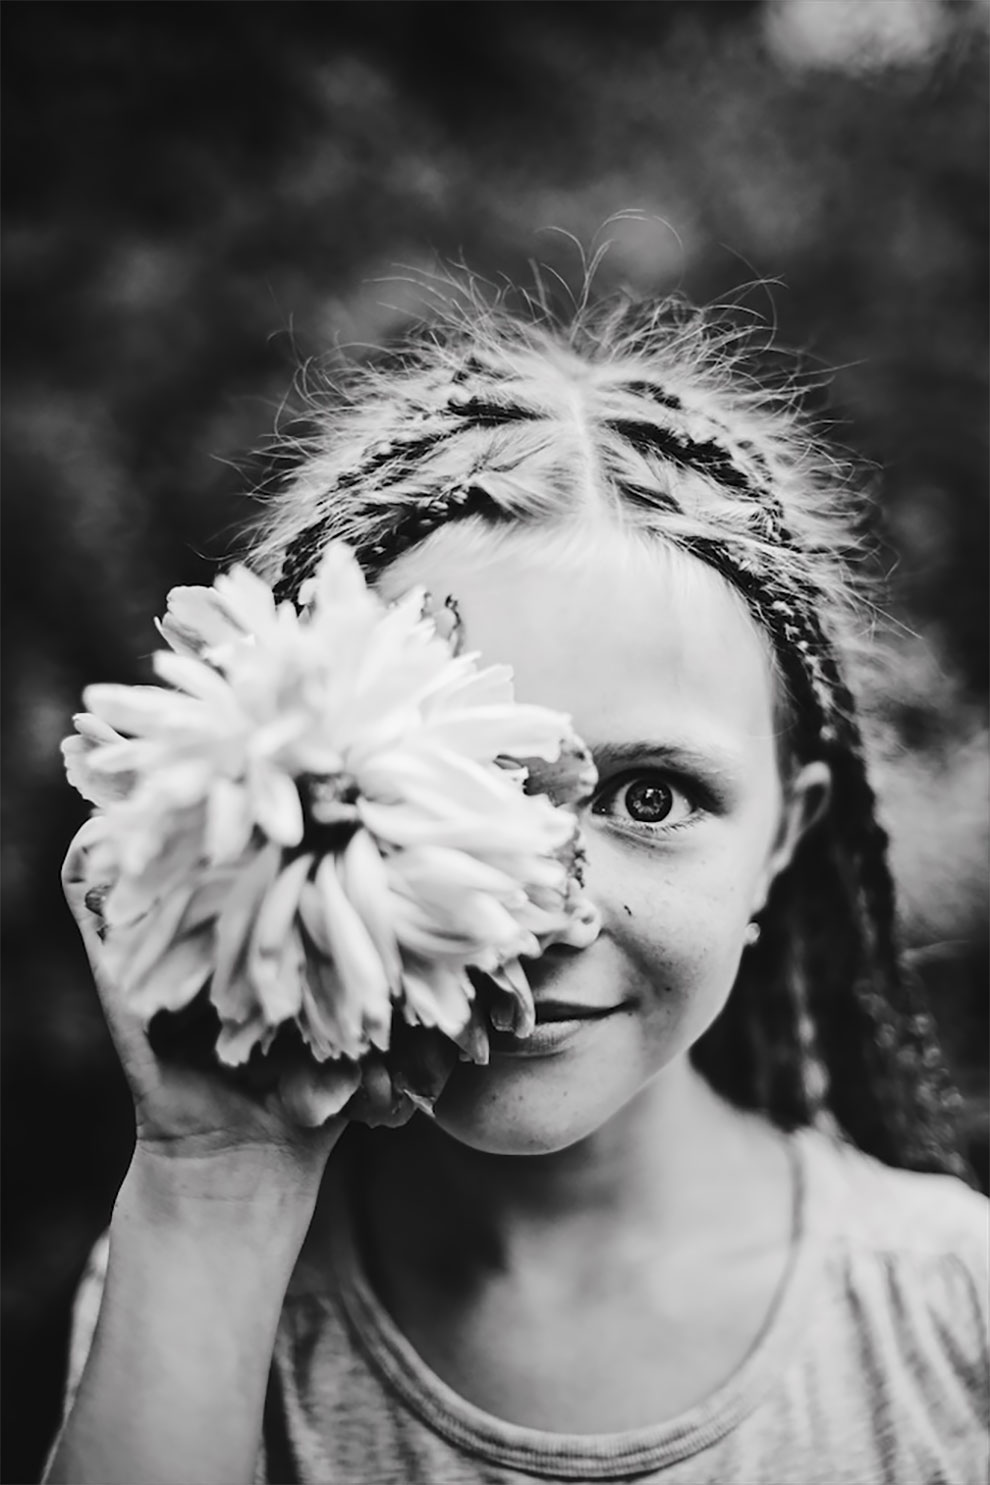 Детский фотоконкурс 2017: Лучшие черно-белые снимки посвященные детству